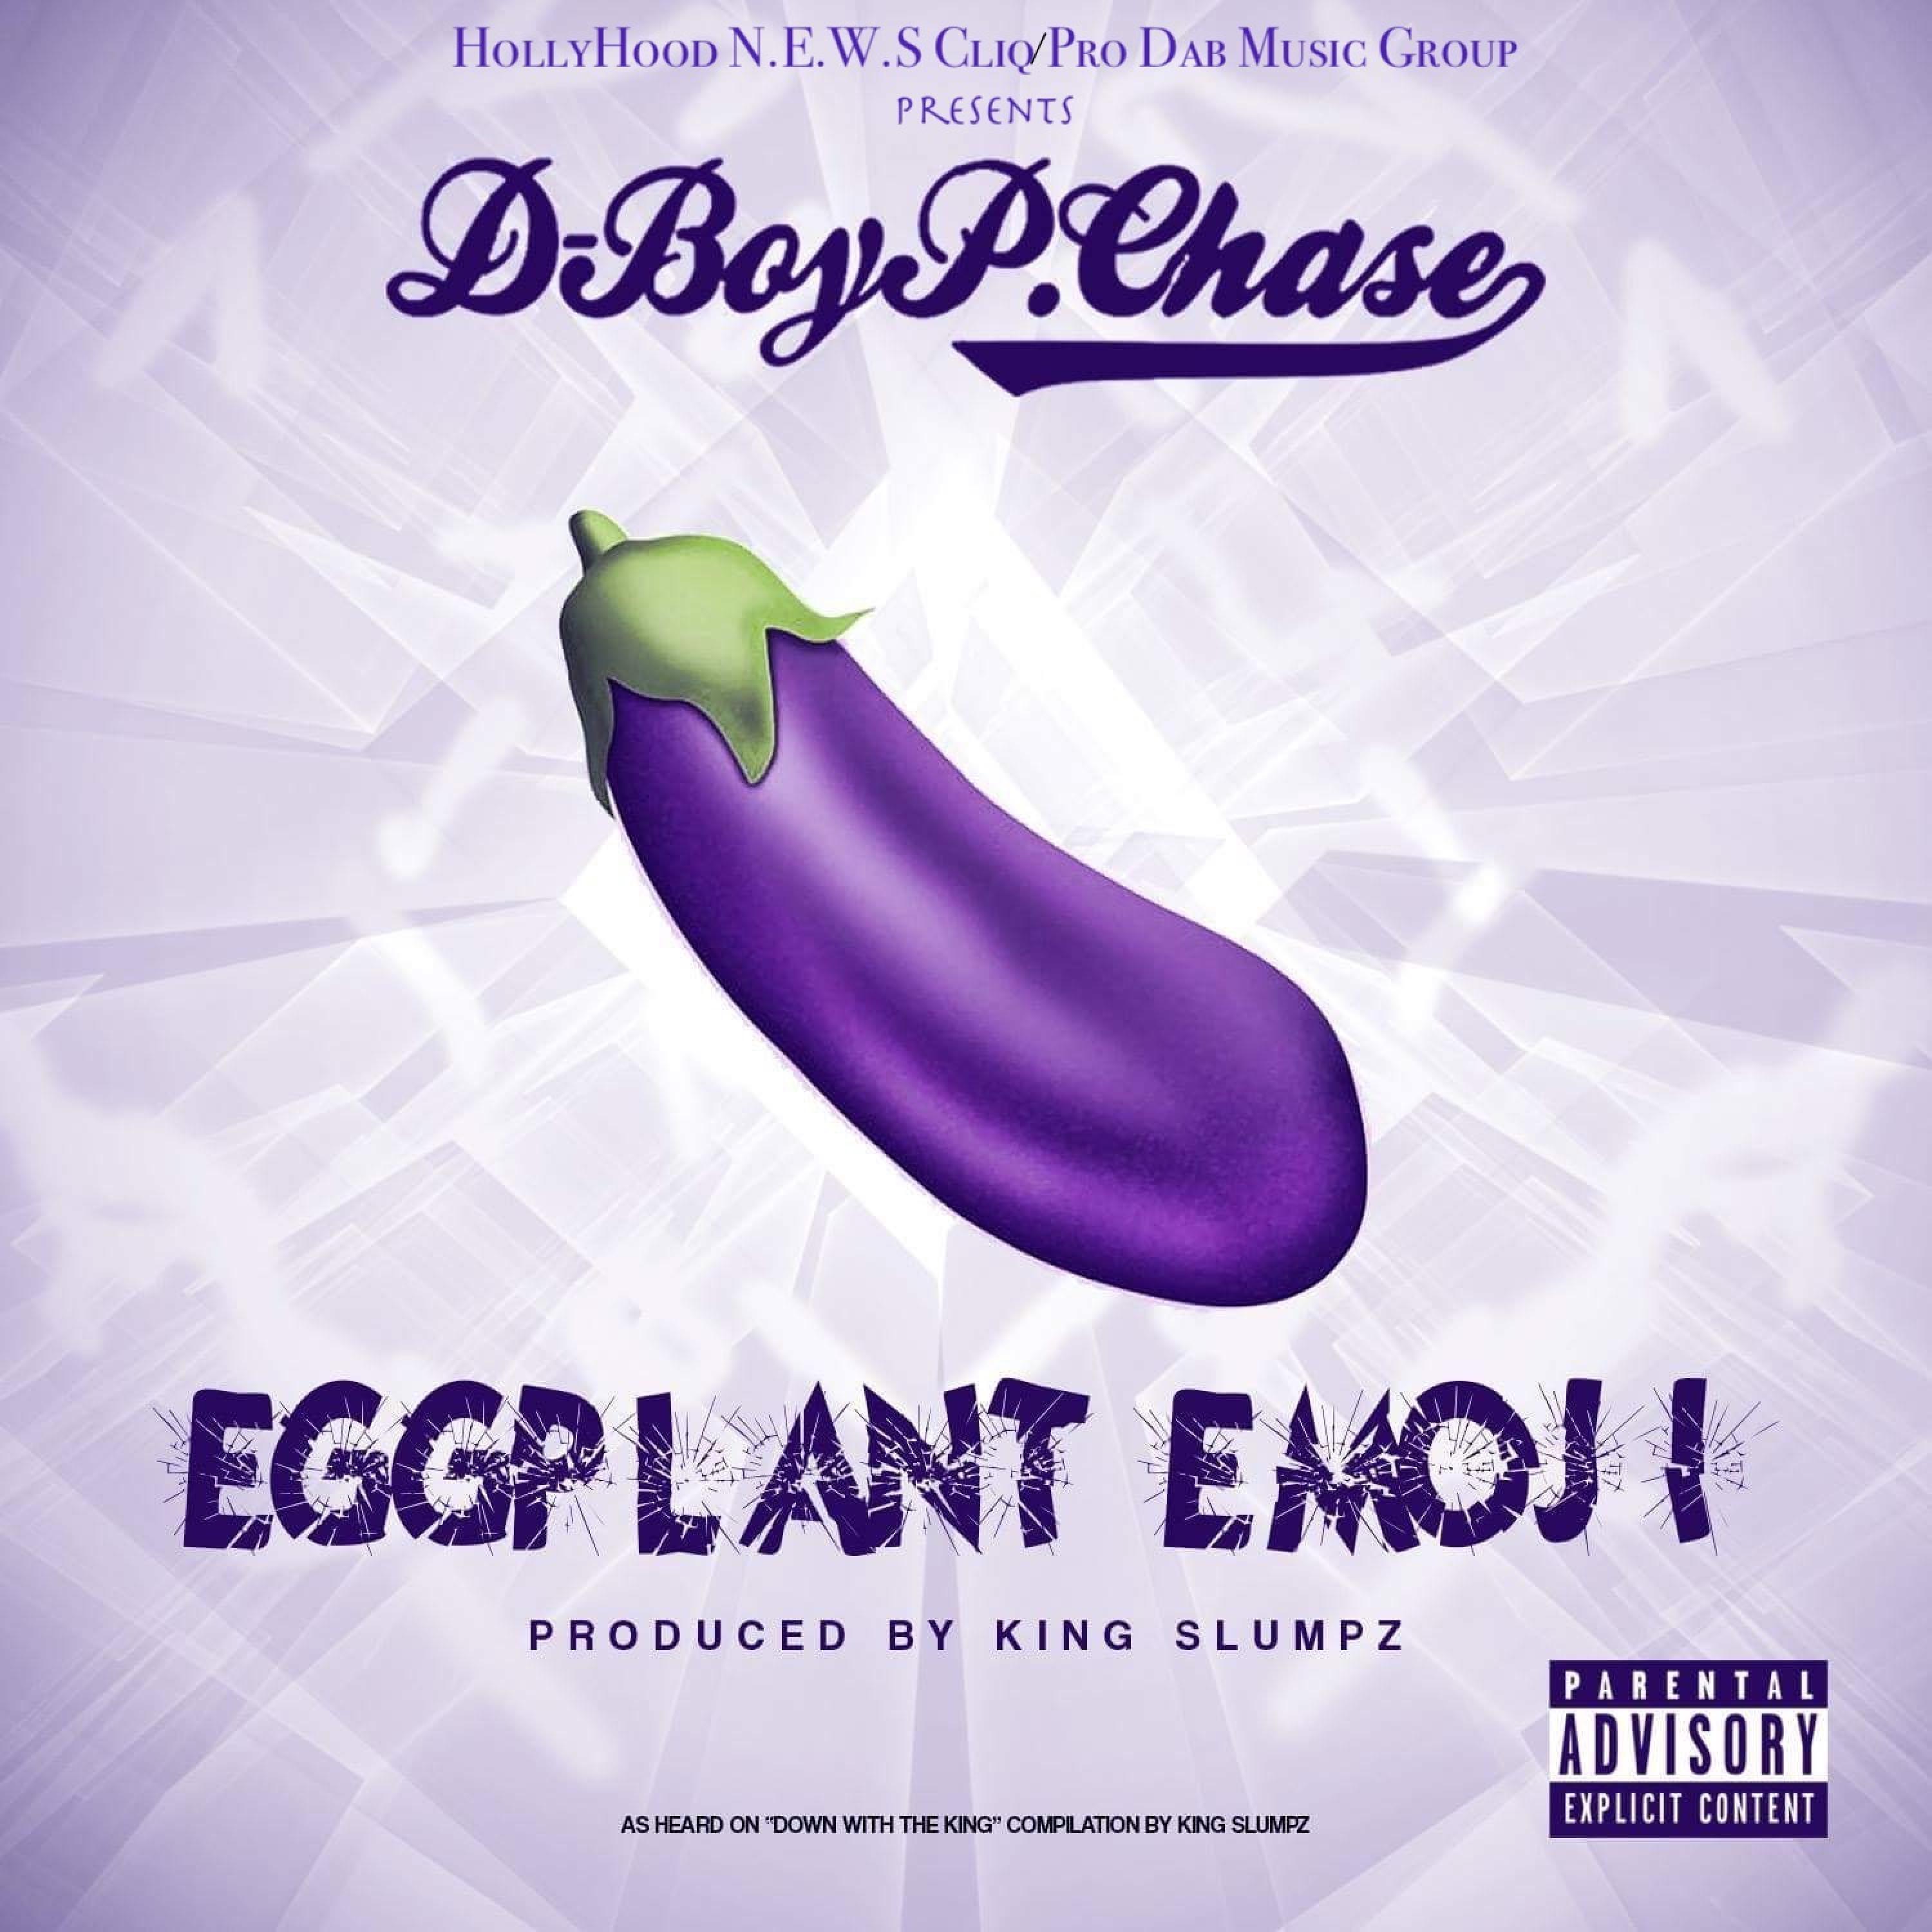 Eggplant Emoji (feat. D-Boy P. Chase)